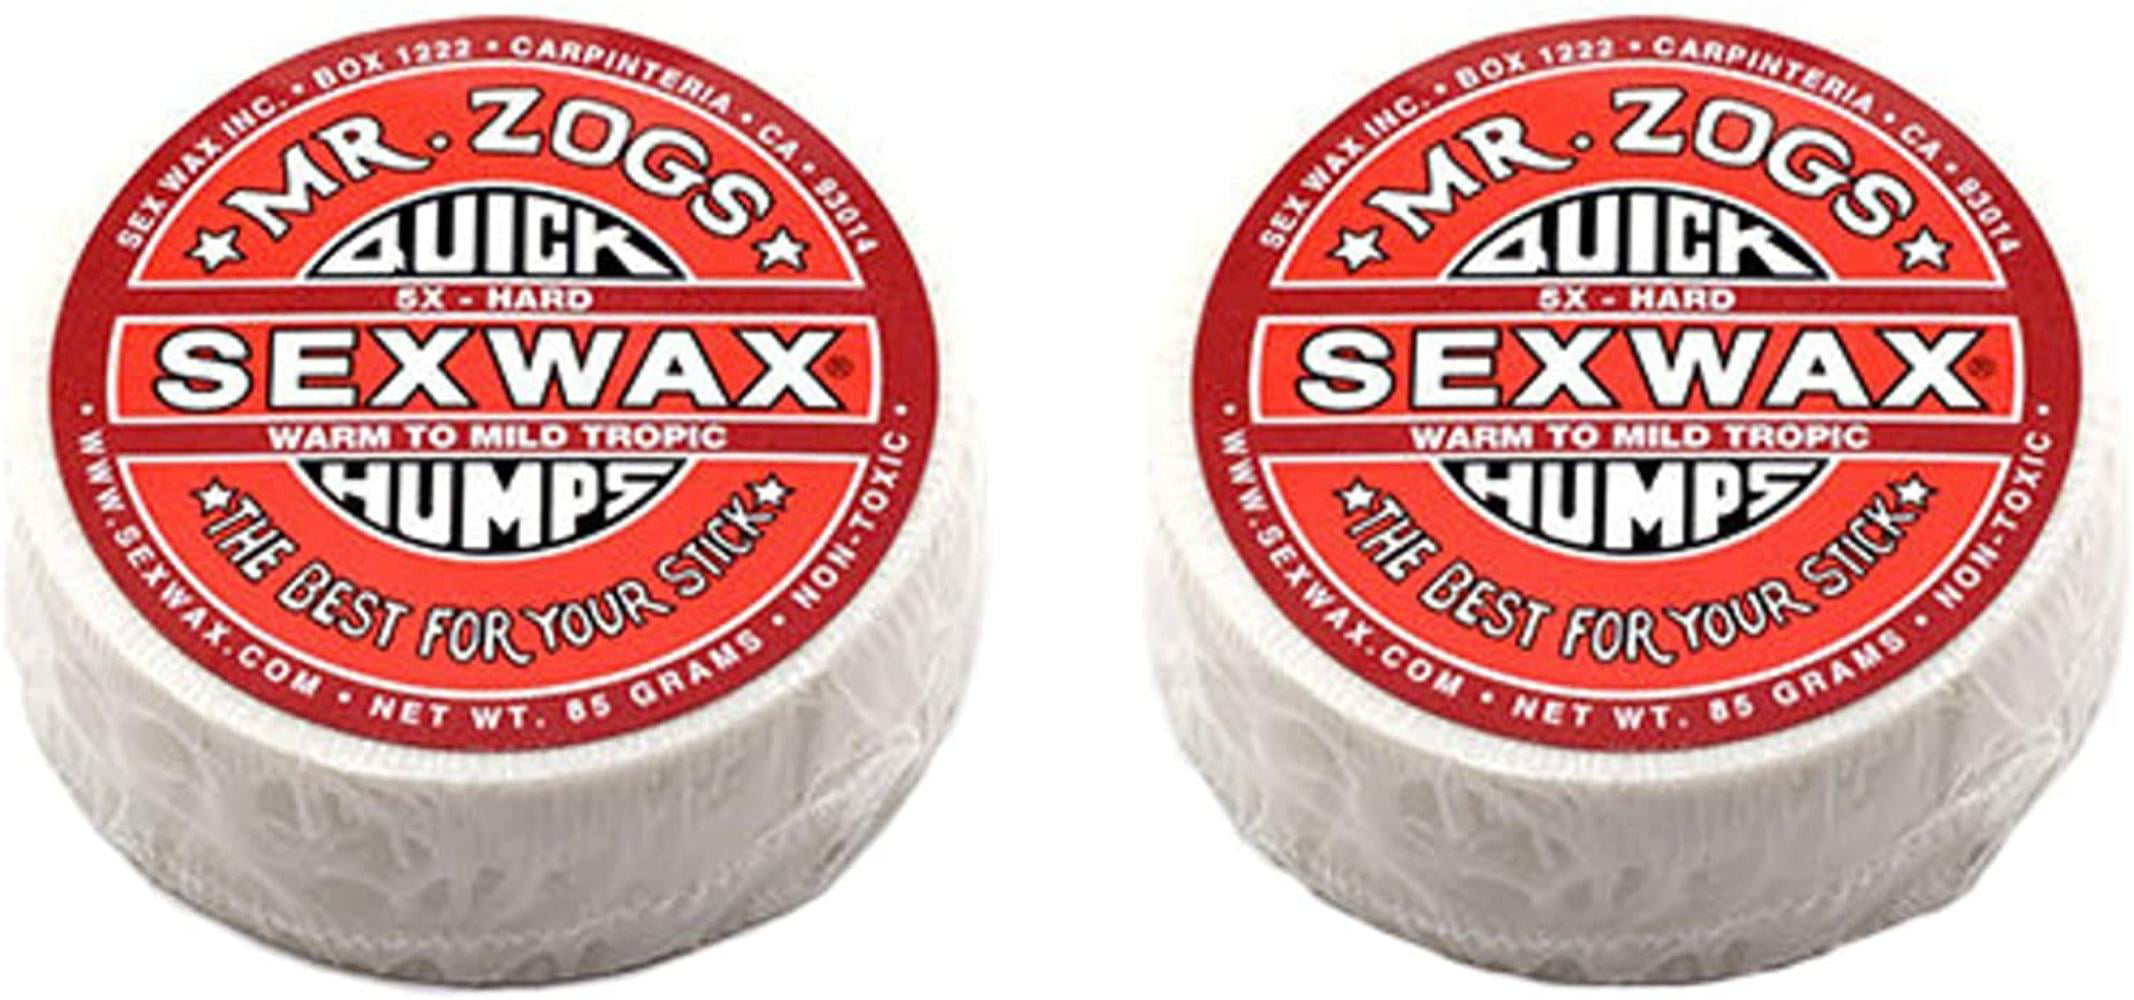 Red SexWax Quick Humps Mr Zogs Surfboard Wax 5X Hard 